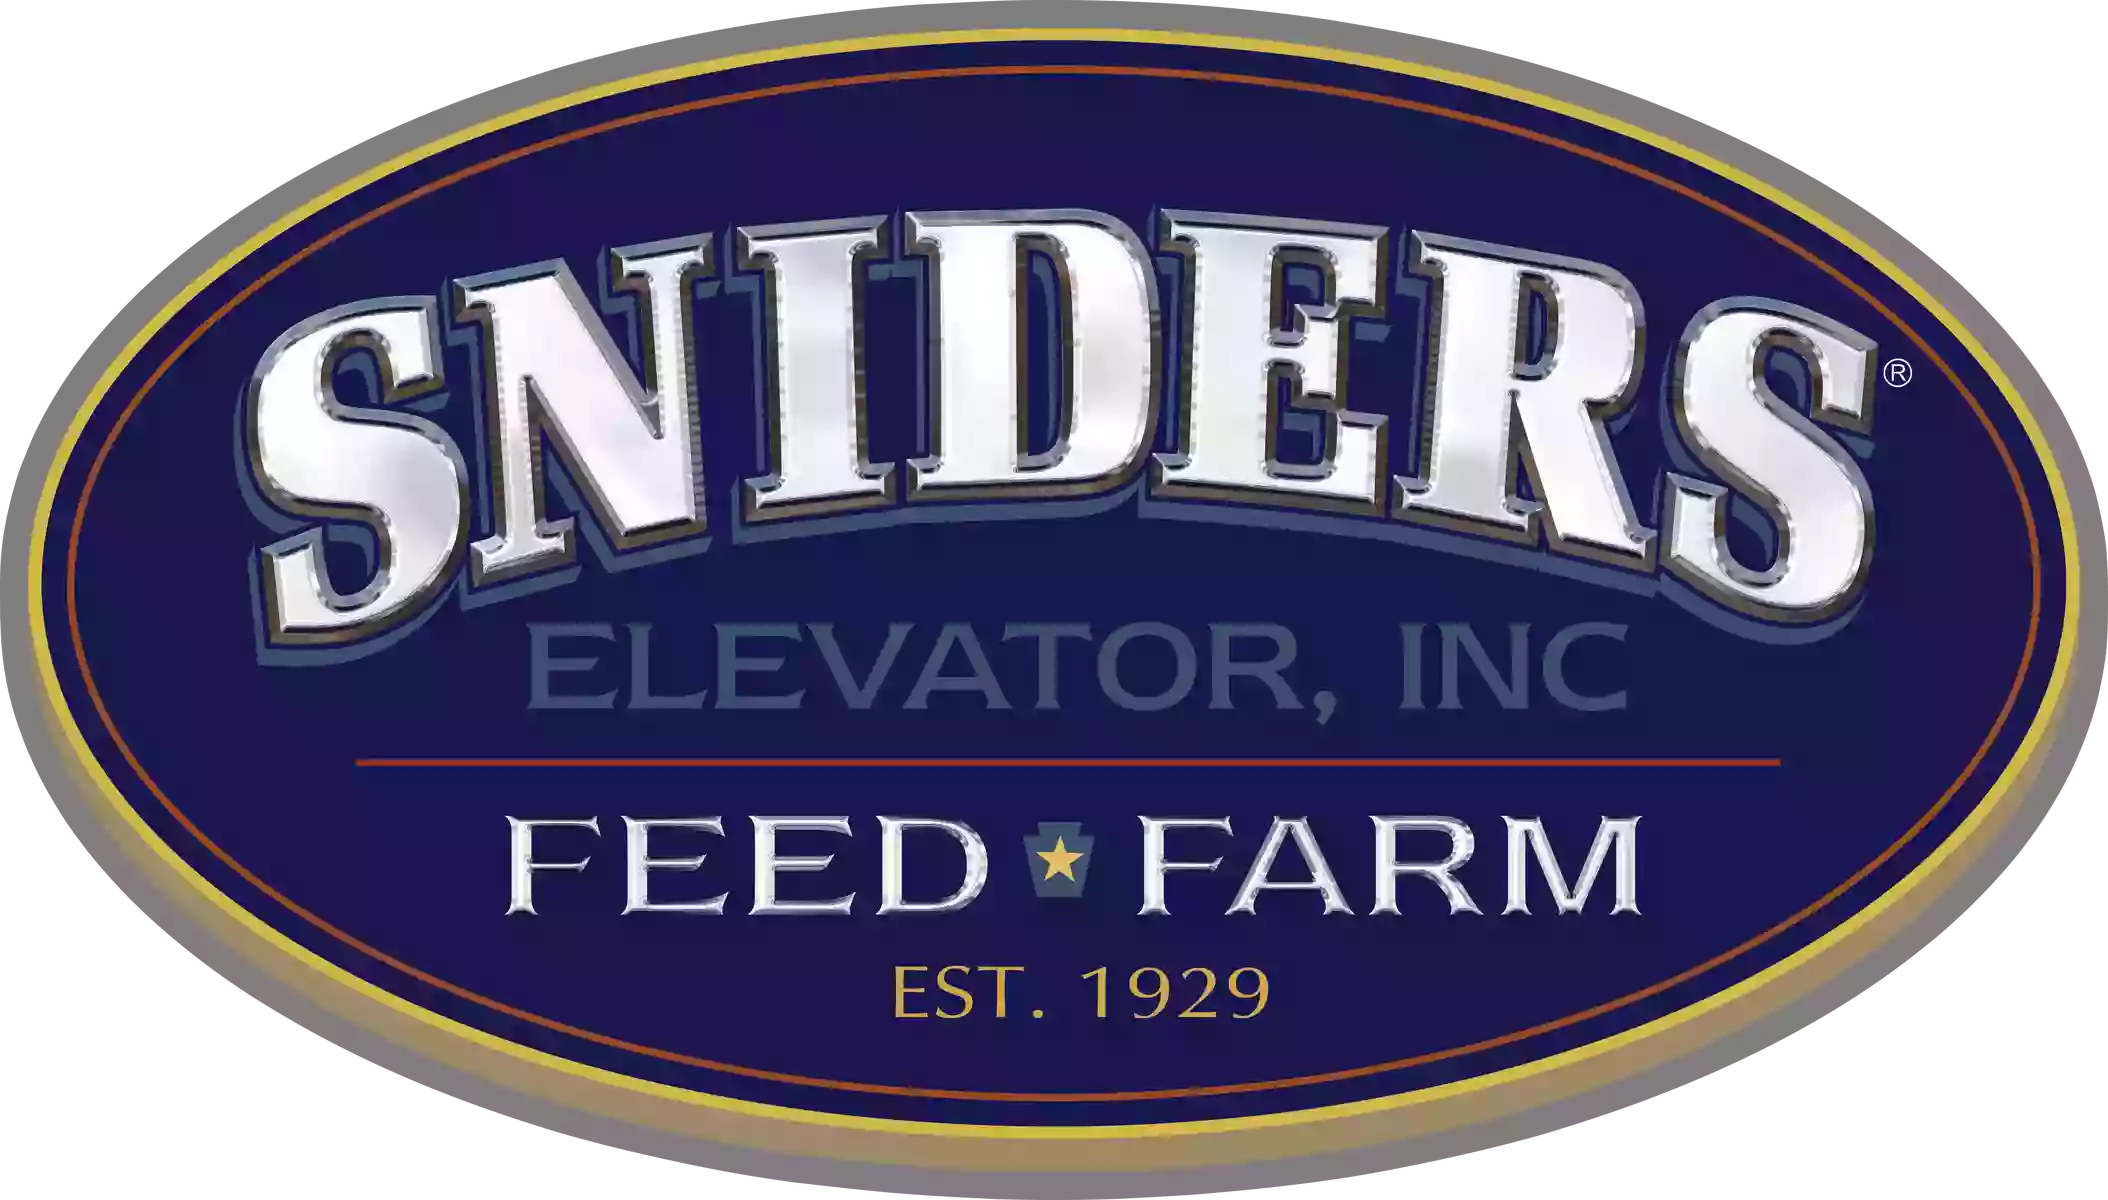 Snider's Elevator, Inc.